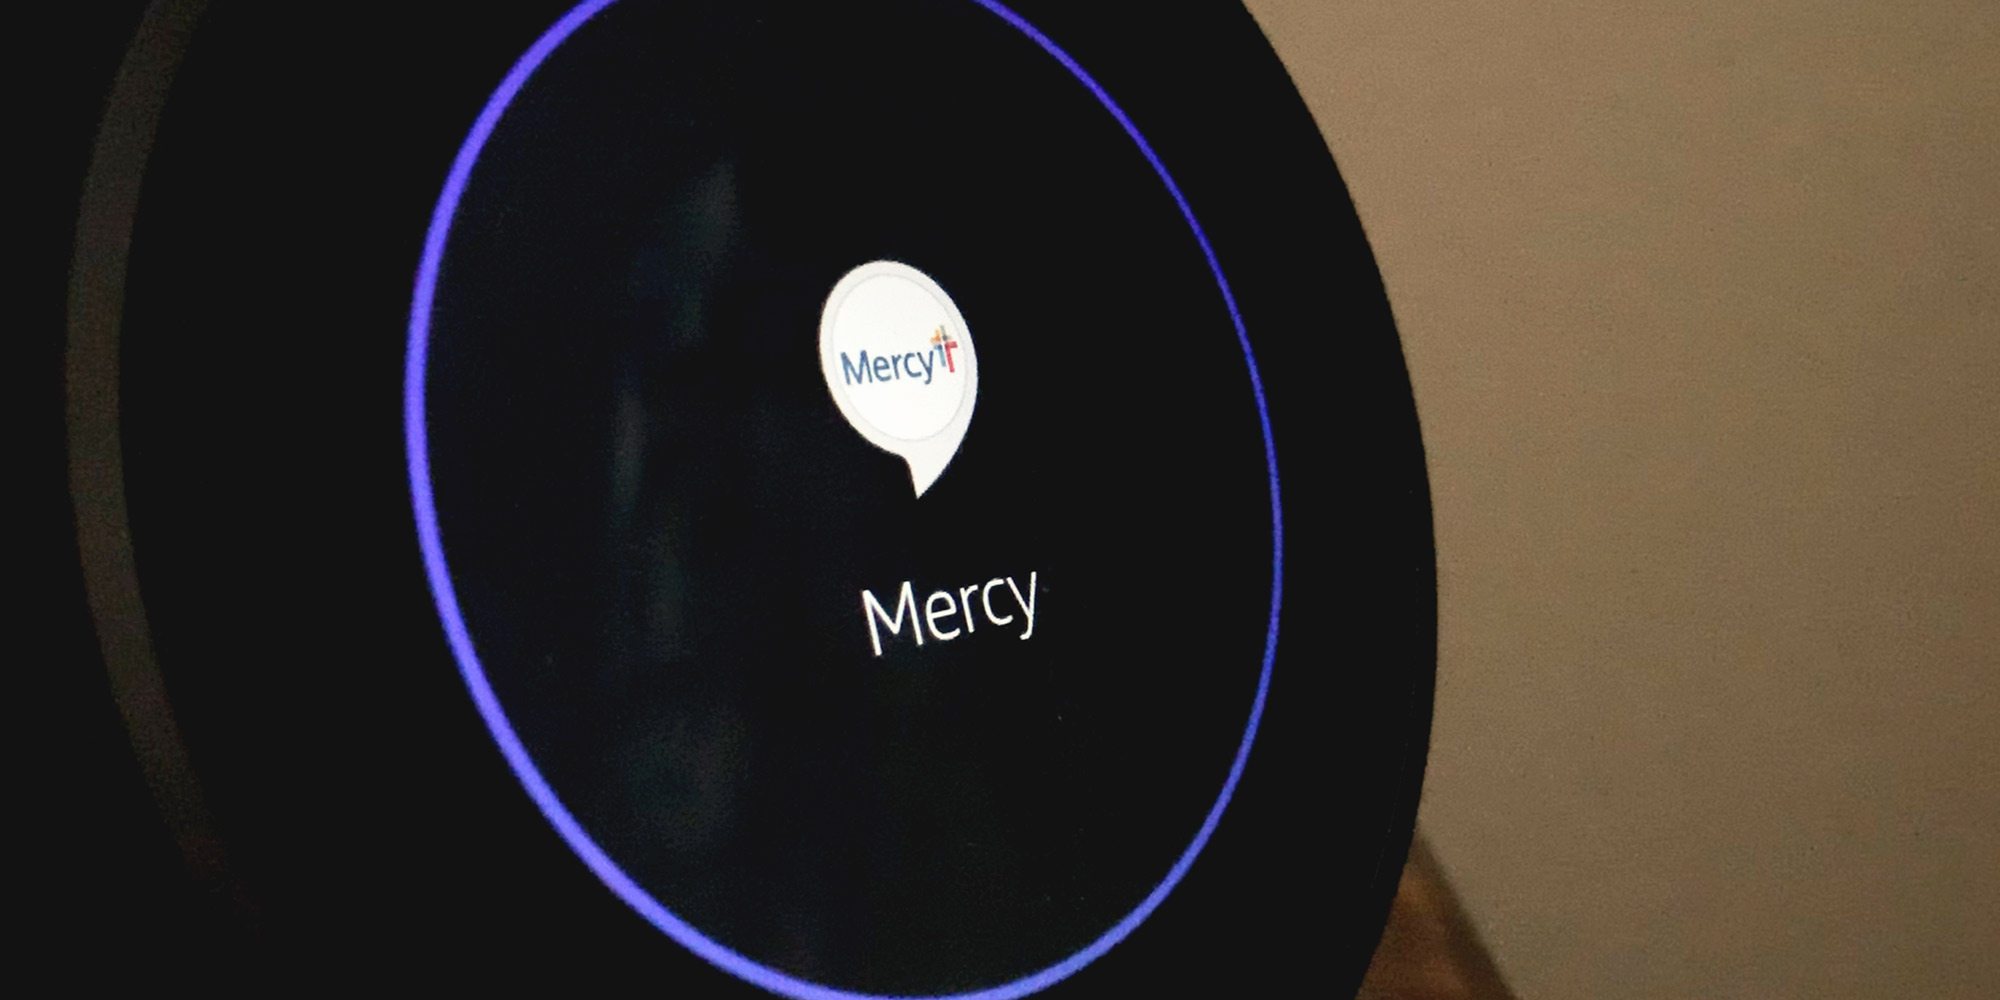 Mercy Hospital Amazon Alexa